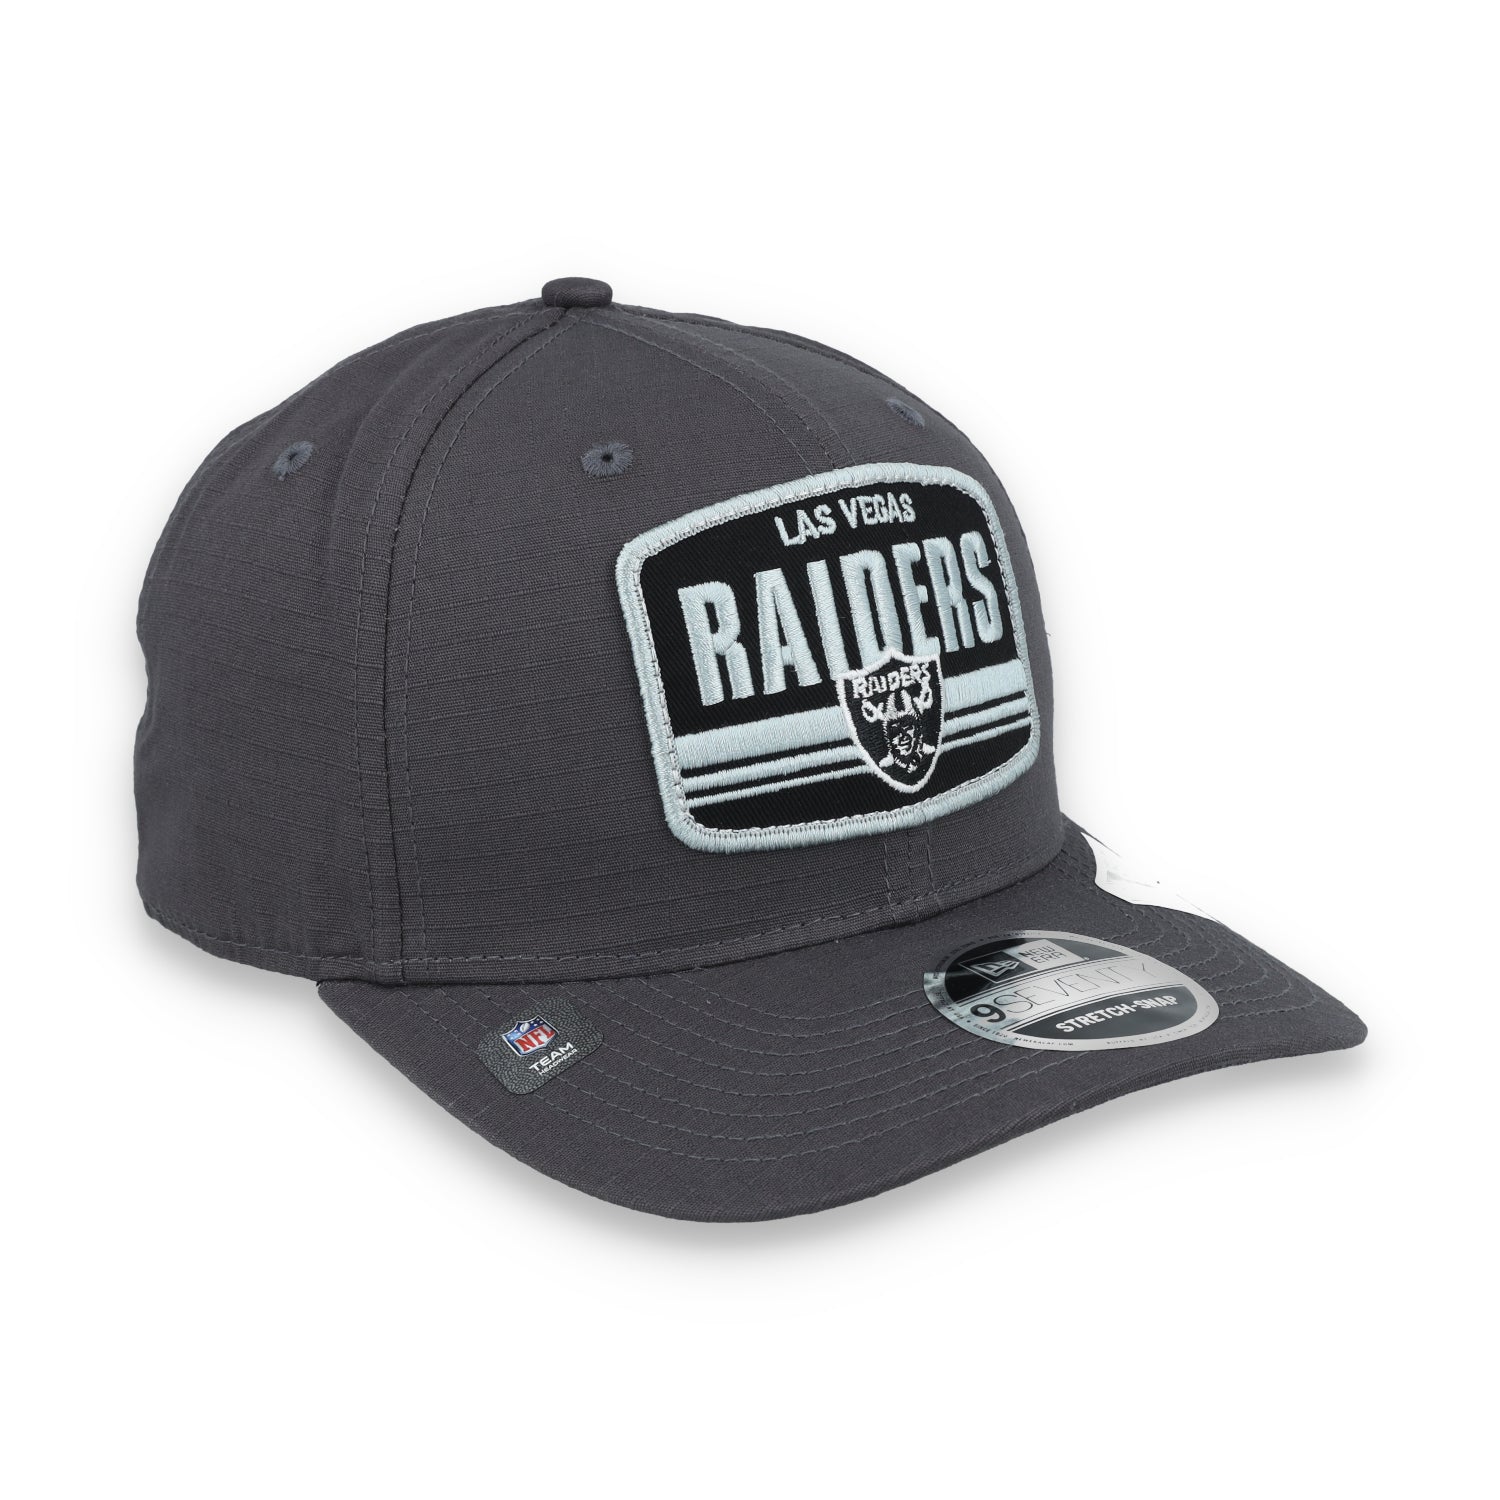 New Era Las Vegas Raiders Team Elevated 9SEVENTY Adjustable Cap